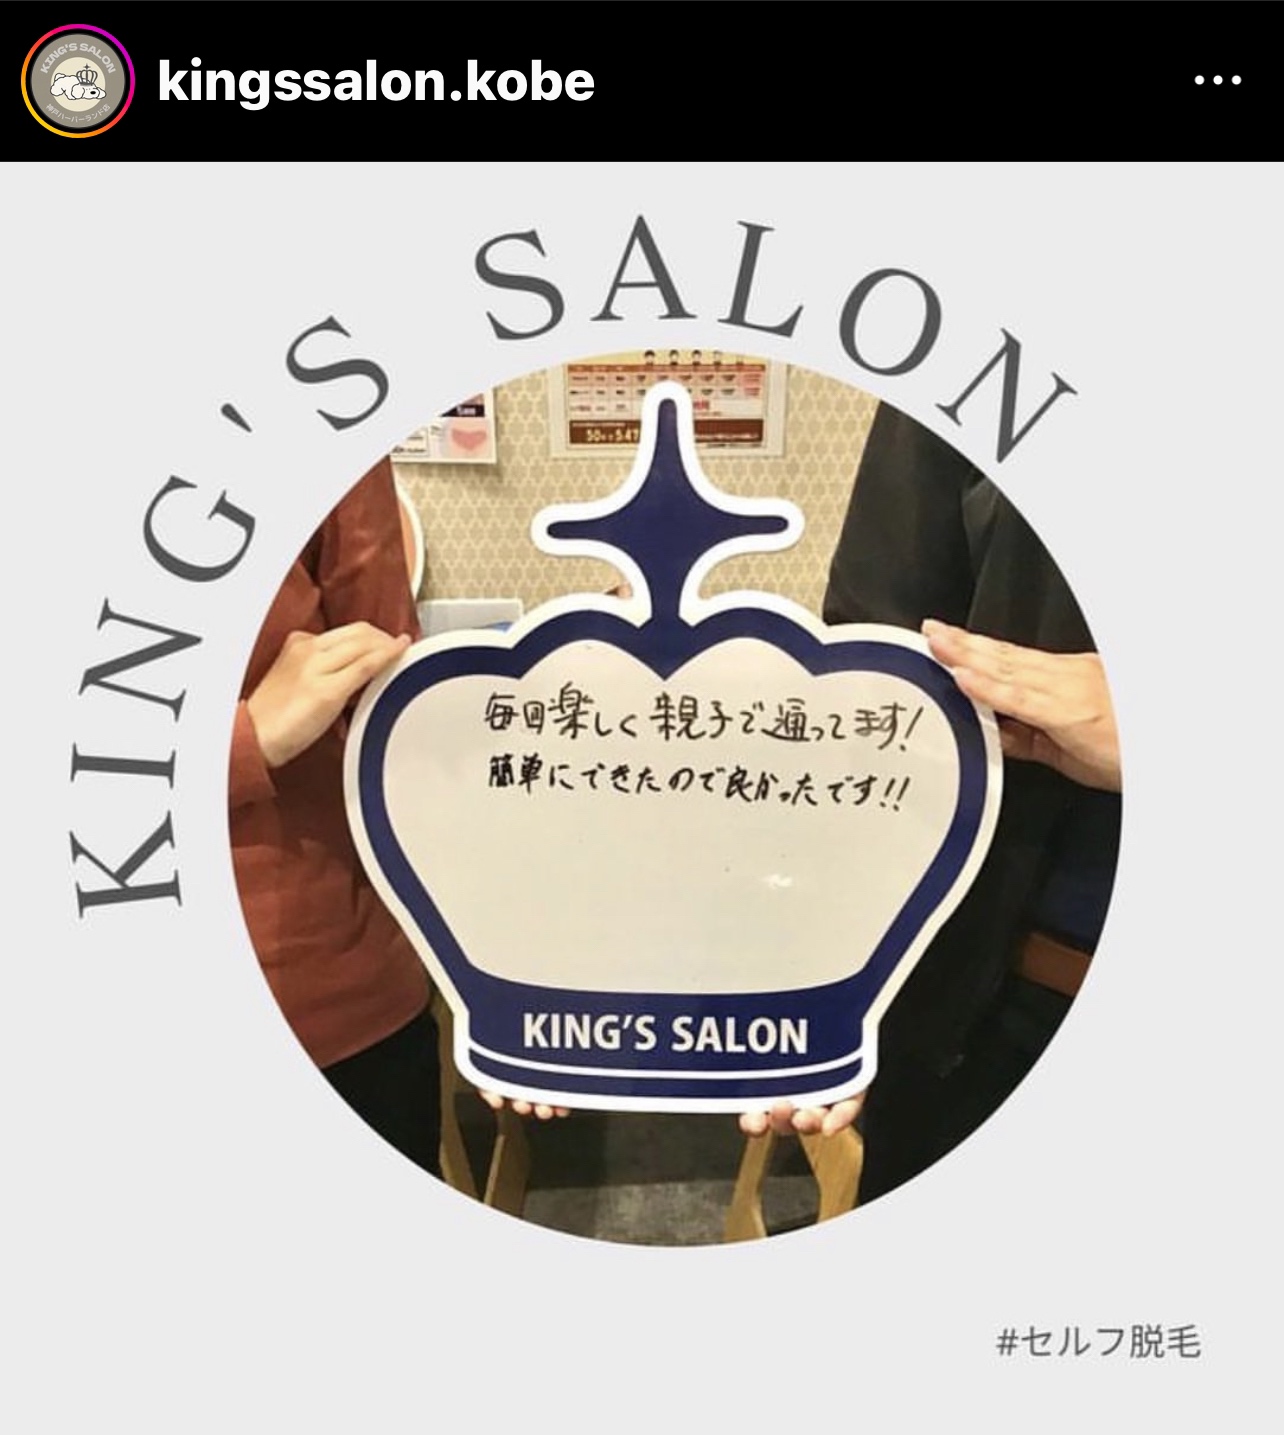 キングスサロン神戸ハーバーランド店 お客様の声 サムネイル画像